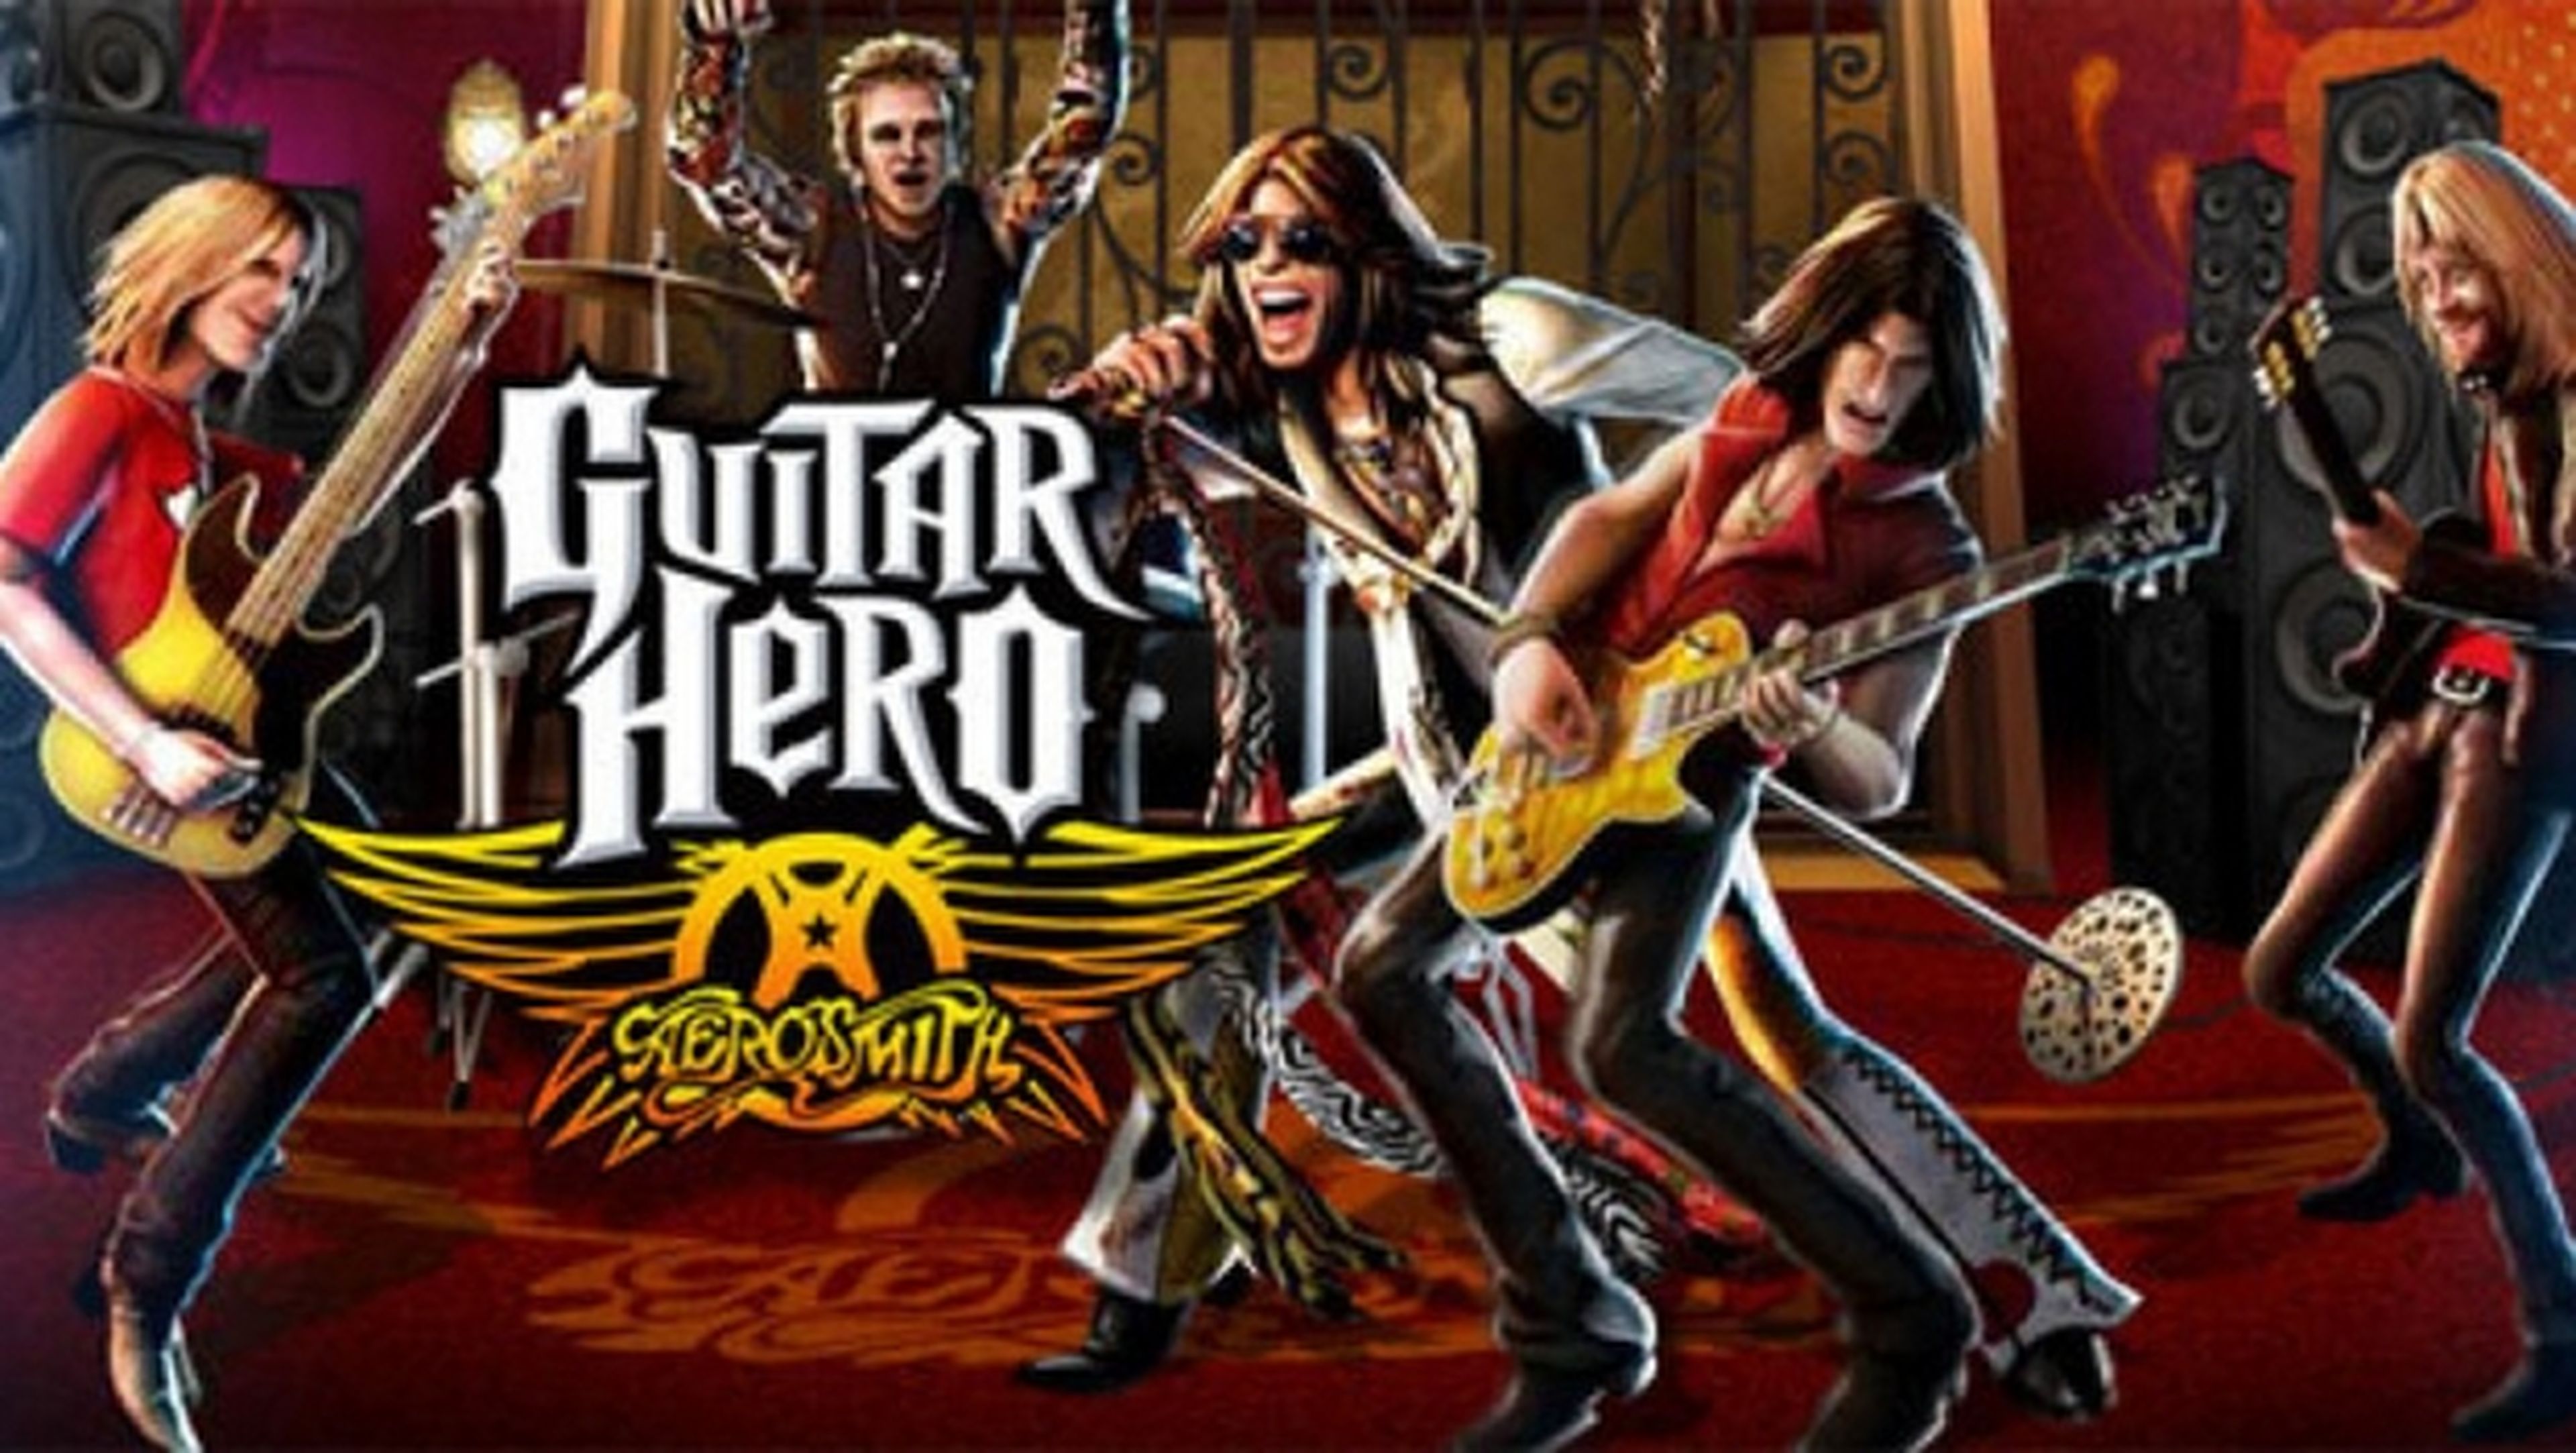 Aerosmith gana más con los videojuegos como Guitar Hero Aerosmith, que con la venta de música.